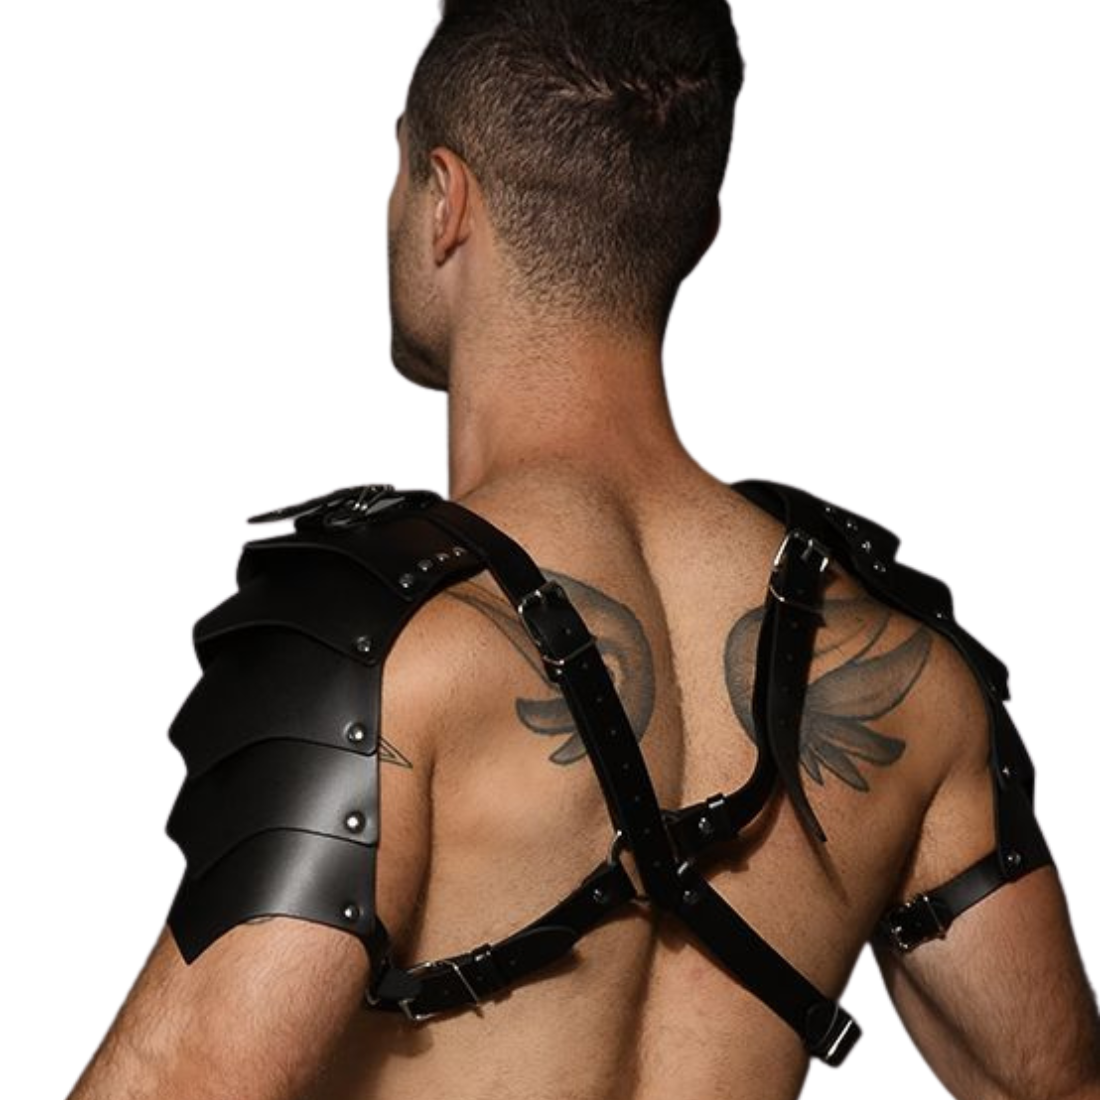 Stoer, sexy zwart gladiator harnas van het succesvolle merk Andrew Christian. Verkrijgbaar bij Flavourez.